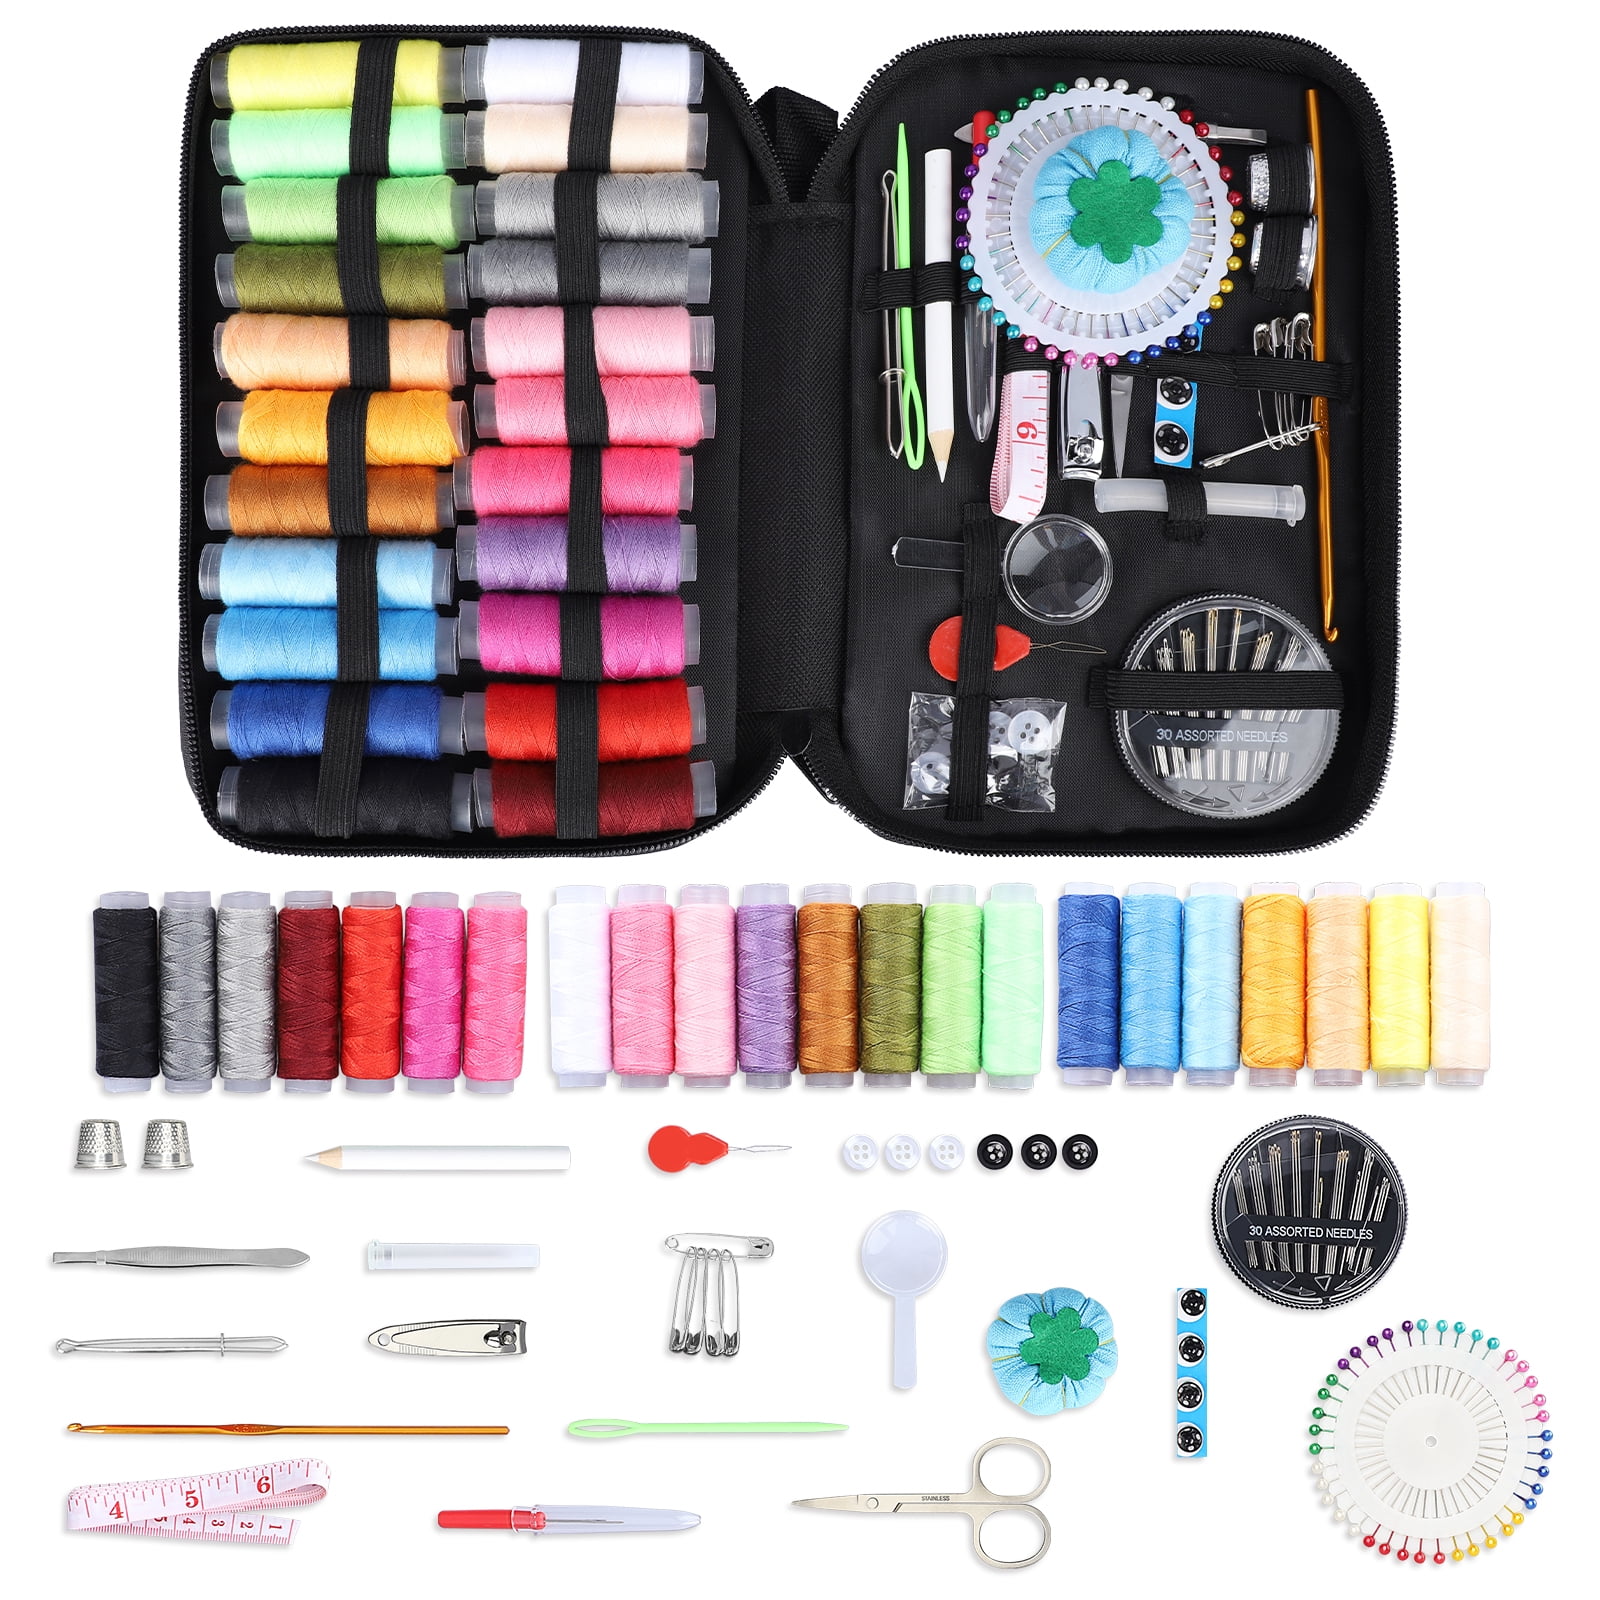 Home Travel Thread Threader Needle Tape Measure Scissor Sewing Kit Tools Sale 